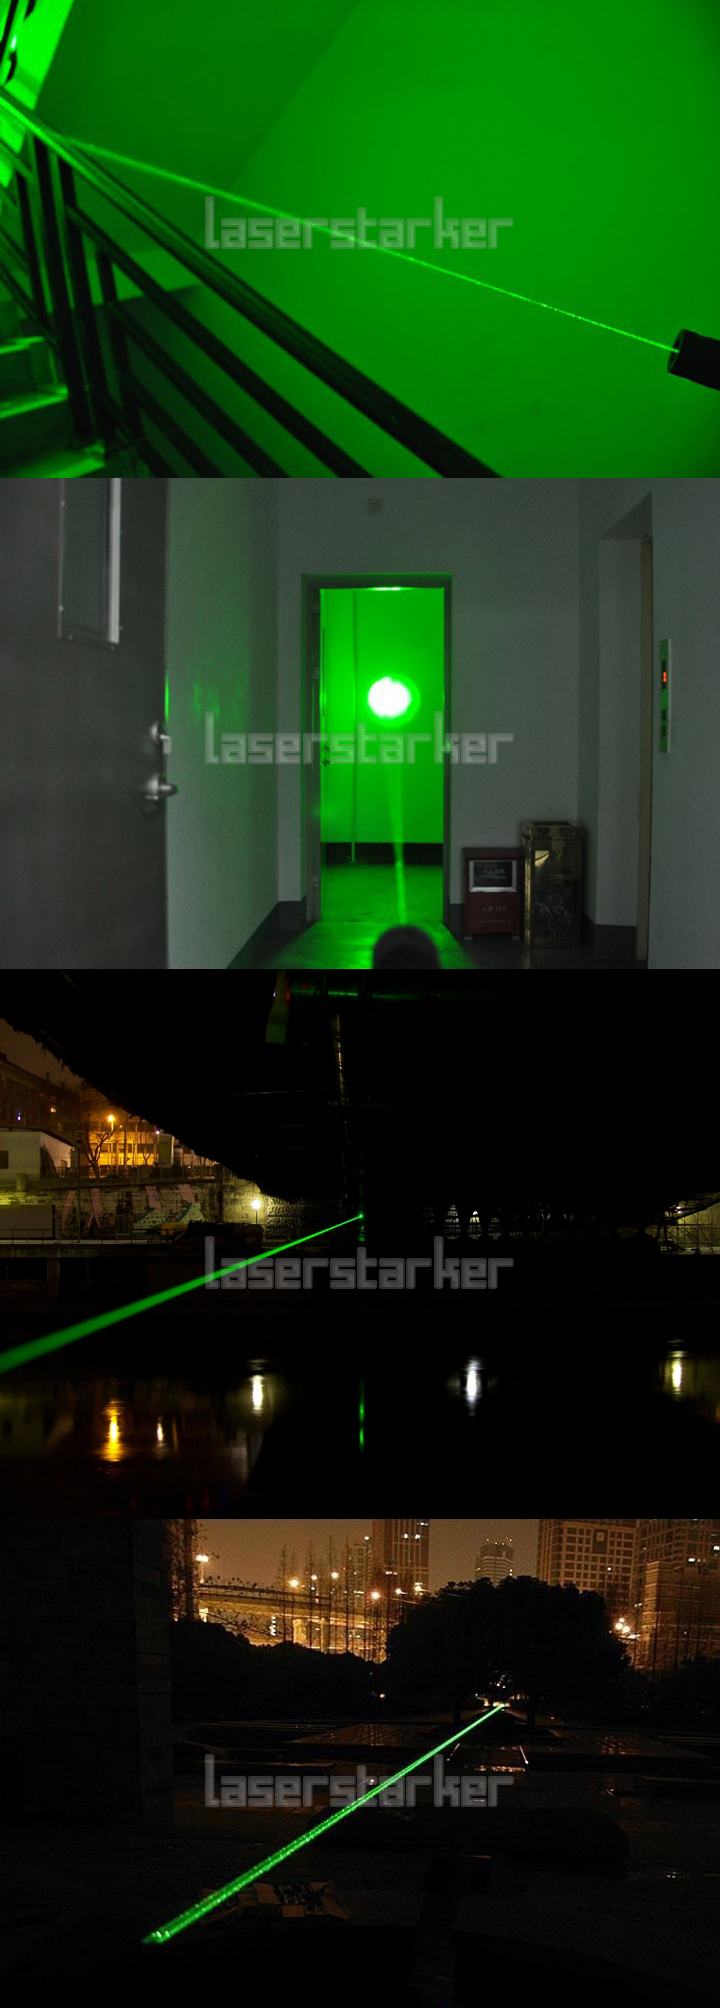 extrem Laserpointer 3000mW Grün fokussierbar